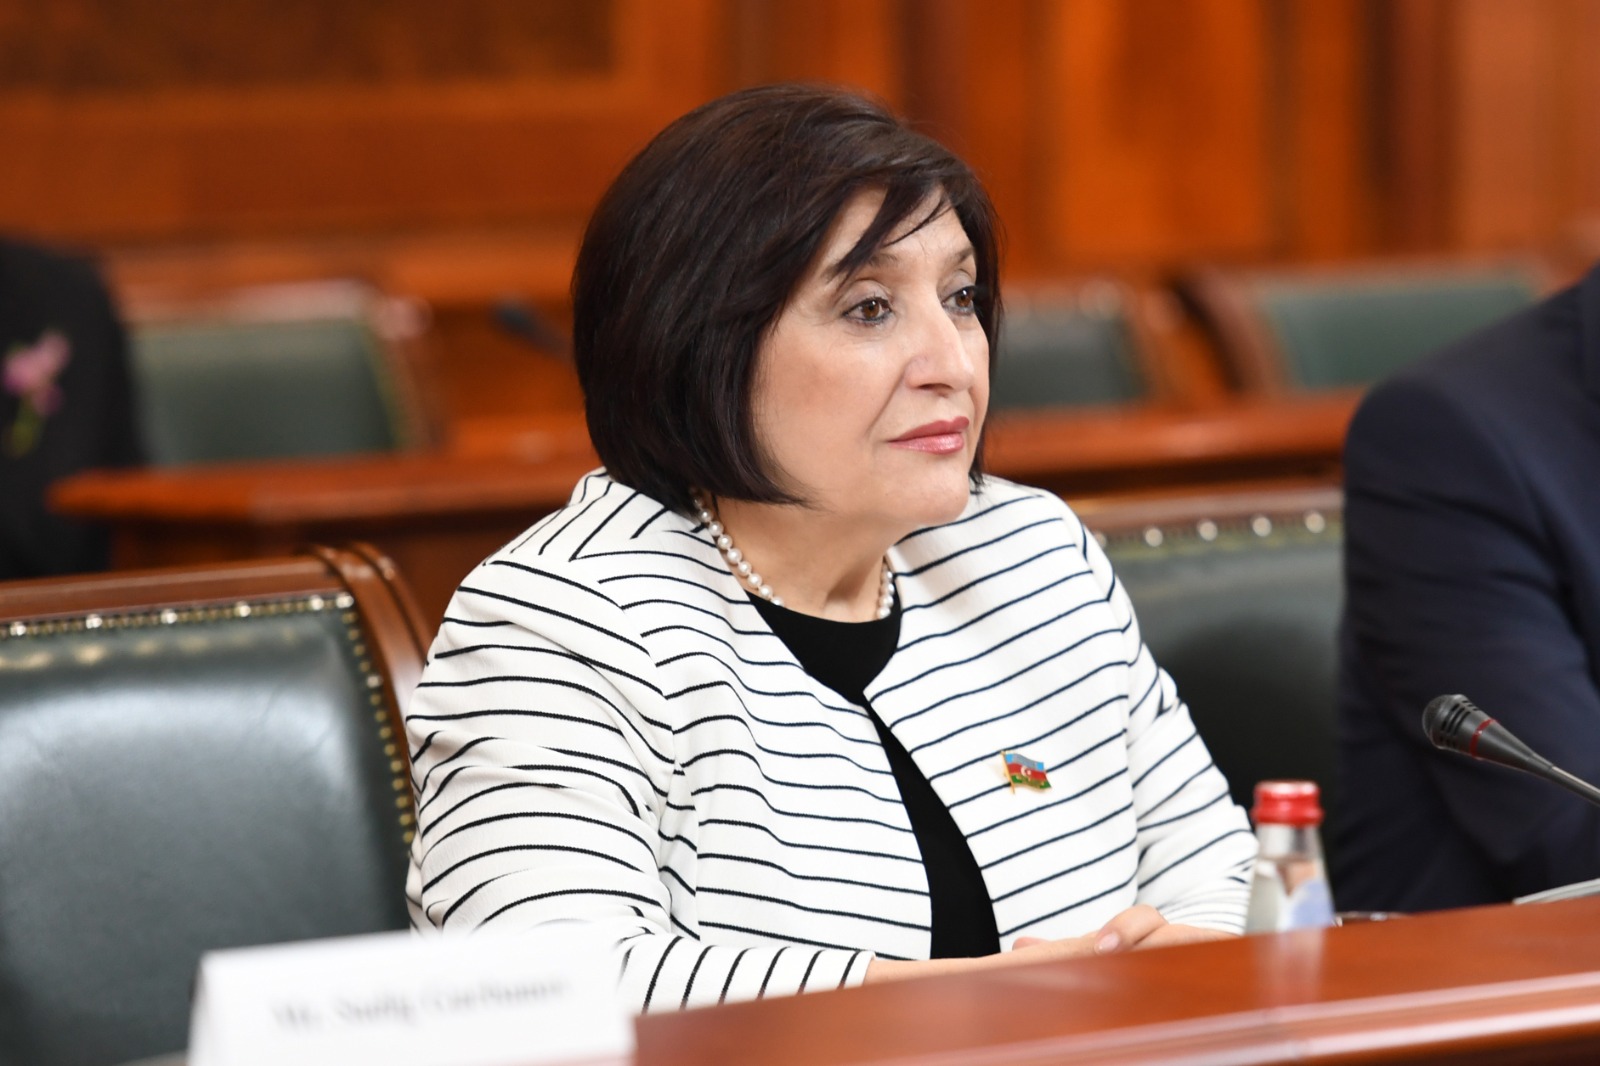 Milli Majlis Chair Sahiba Gafarova Meets with Serbian PM